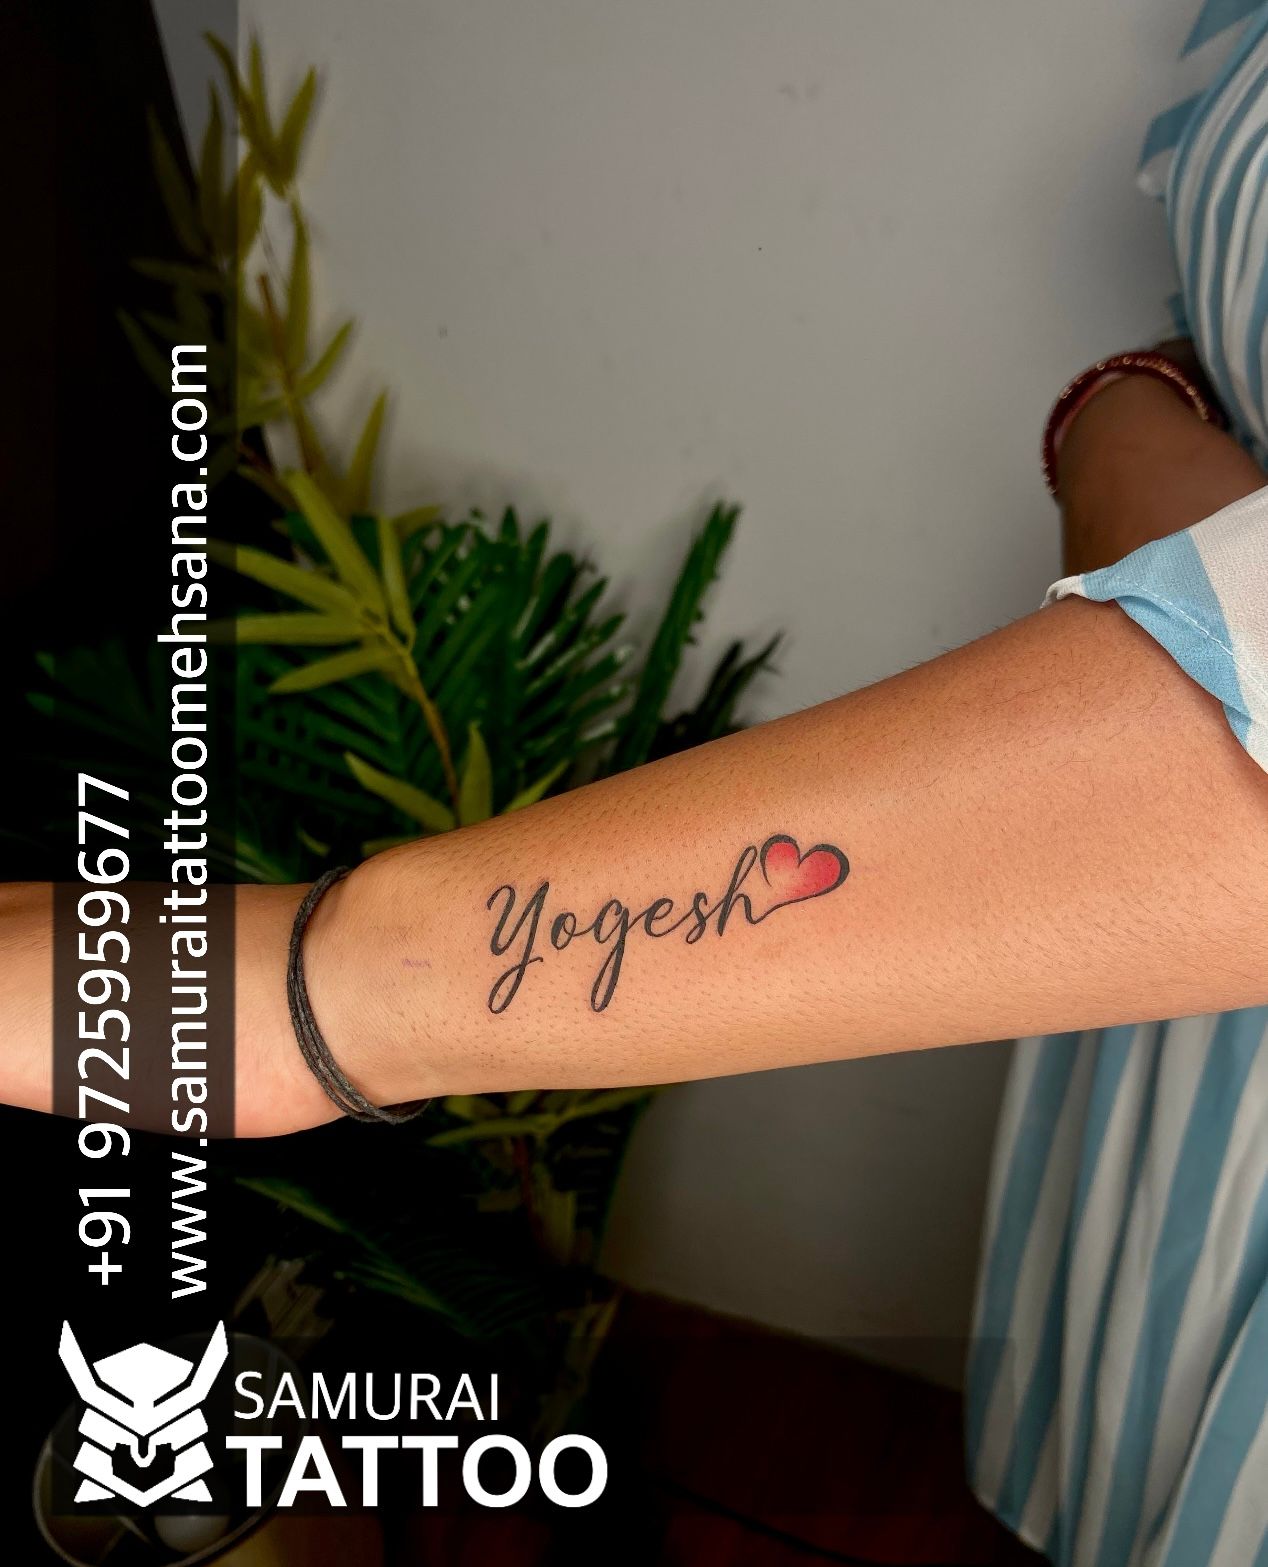 Tattoo uploaded by Samurai Tattoo mehsana  Amit name tattoo Amit name  tattoo design Amit name tattoo ideas Amit tattoo  Tattoodo